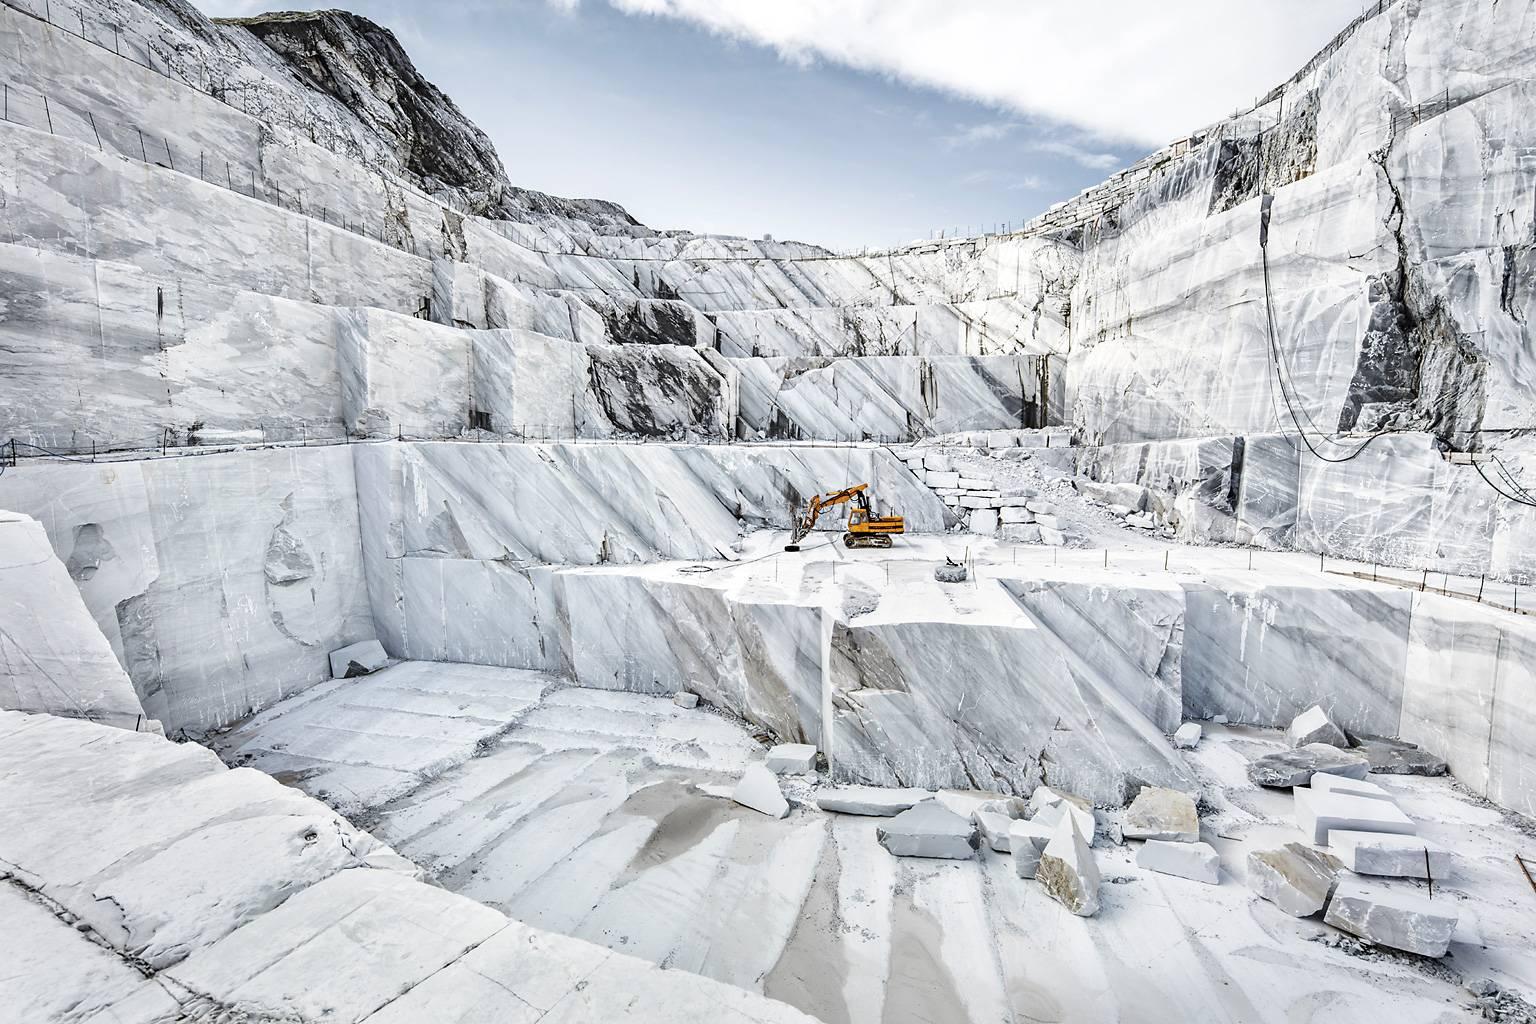 Frank Schott Landscape Photograph – Marmo di Carrara – Großformatfotografie eines ikonischen italienischen Marmorbruchs